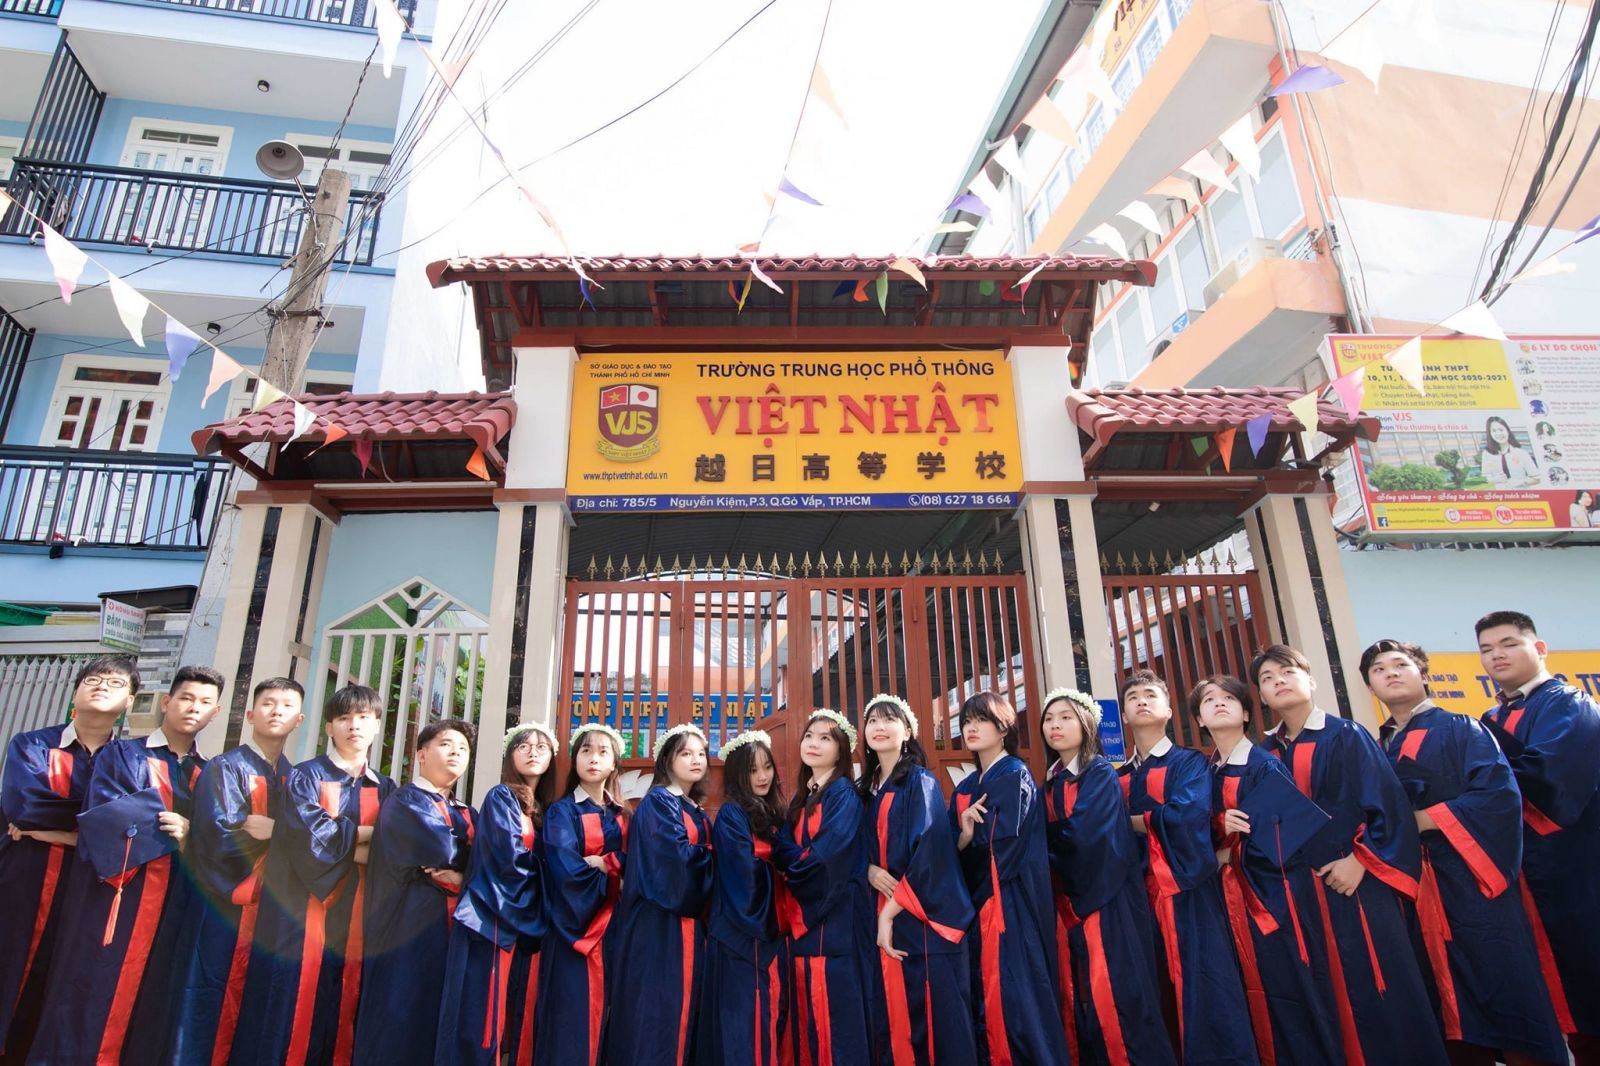 Trường cấp 3 THPT Việt Nhật - Trường học Hạnh Phúc - Hướng đến tương lai